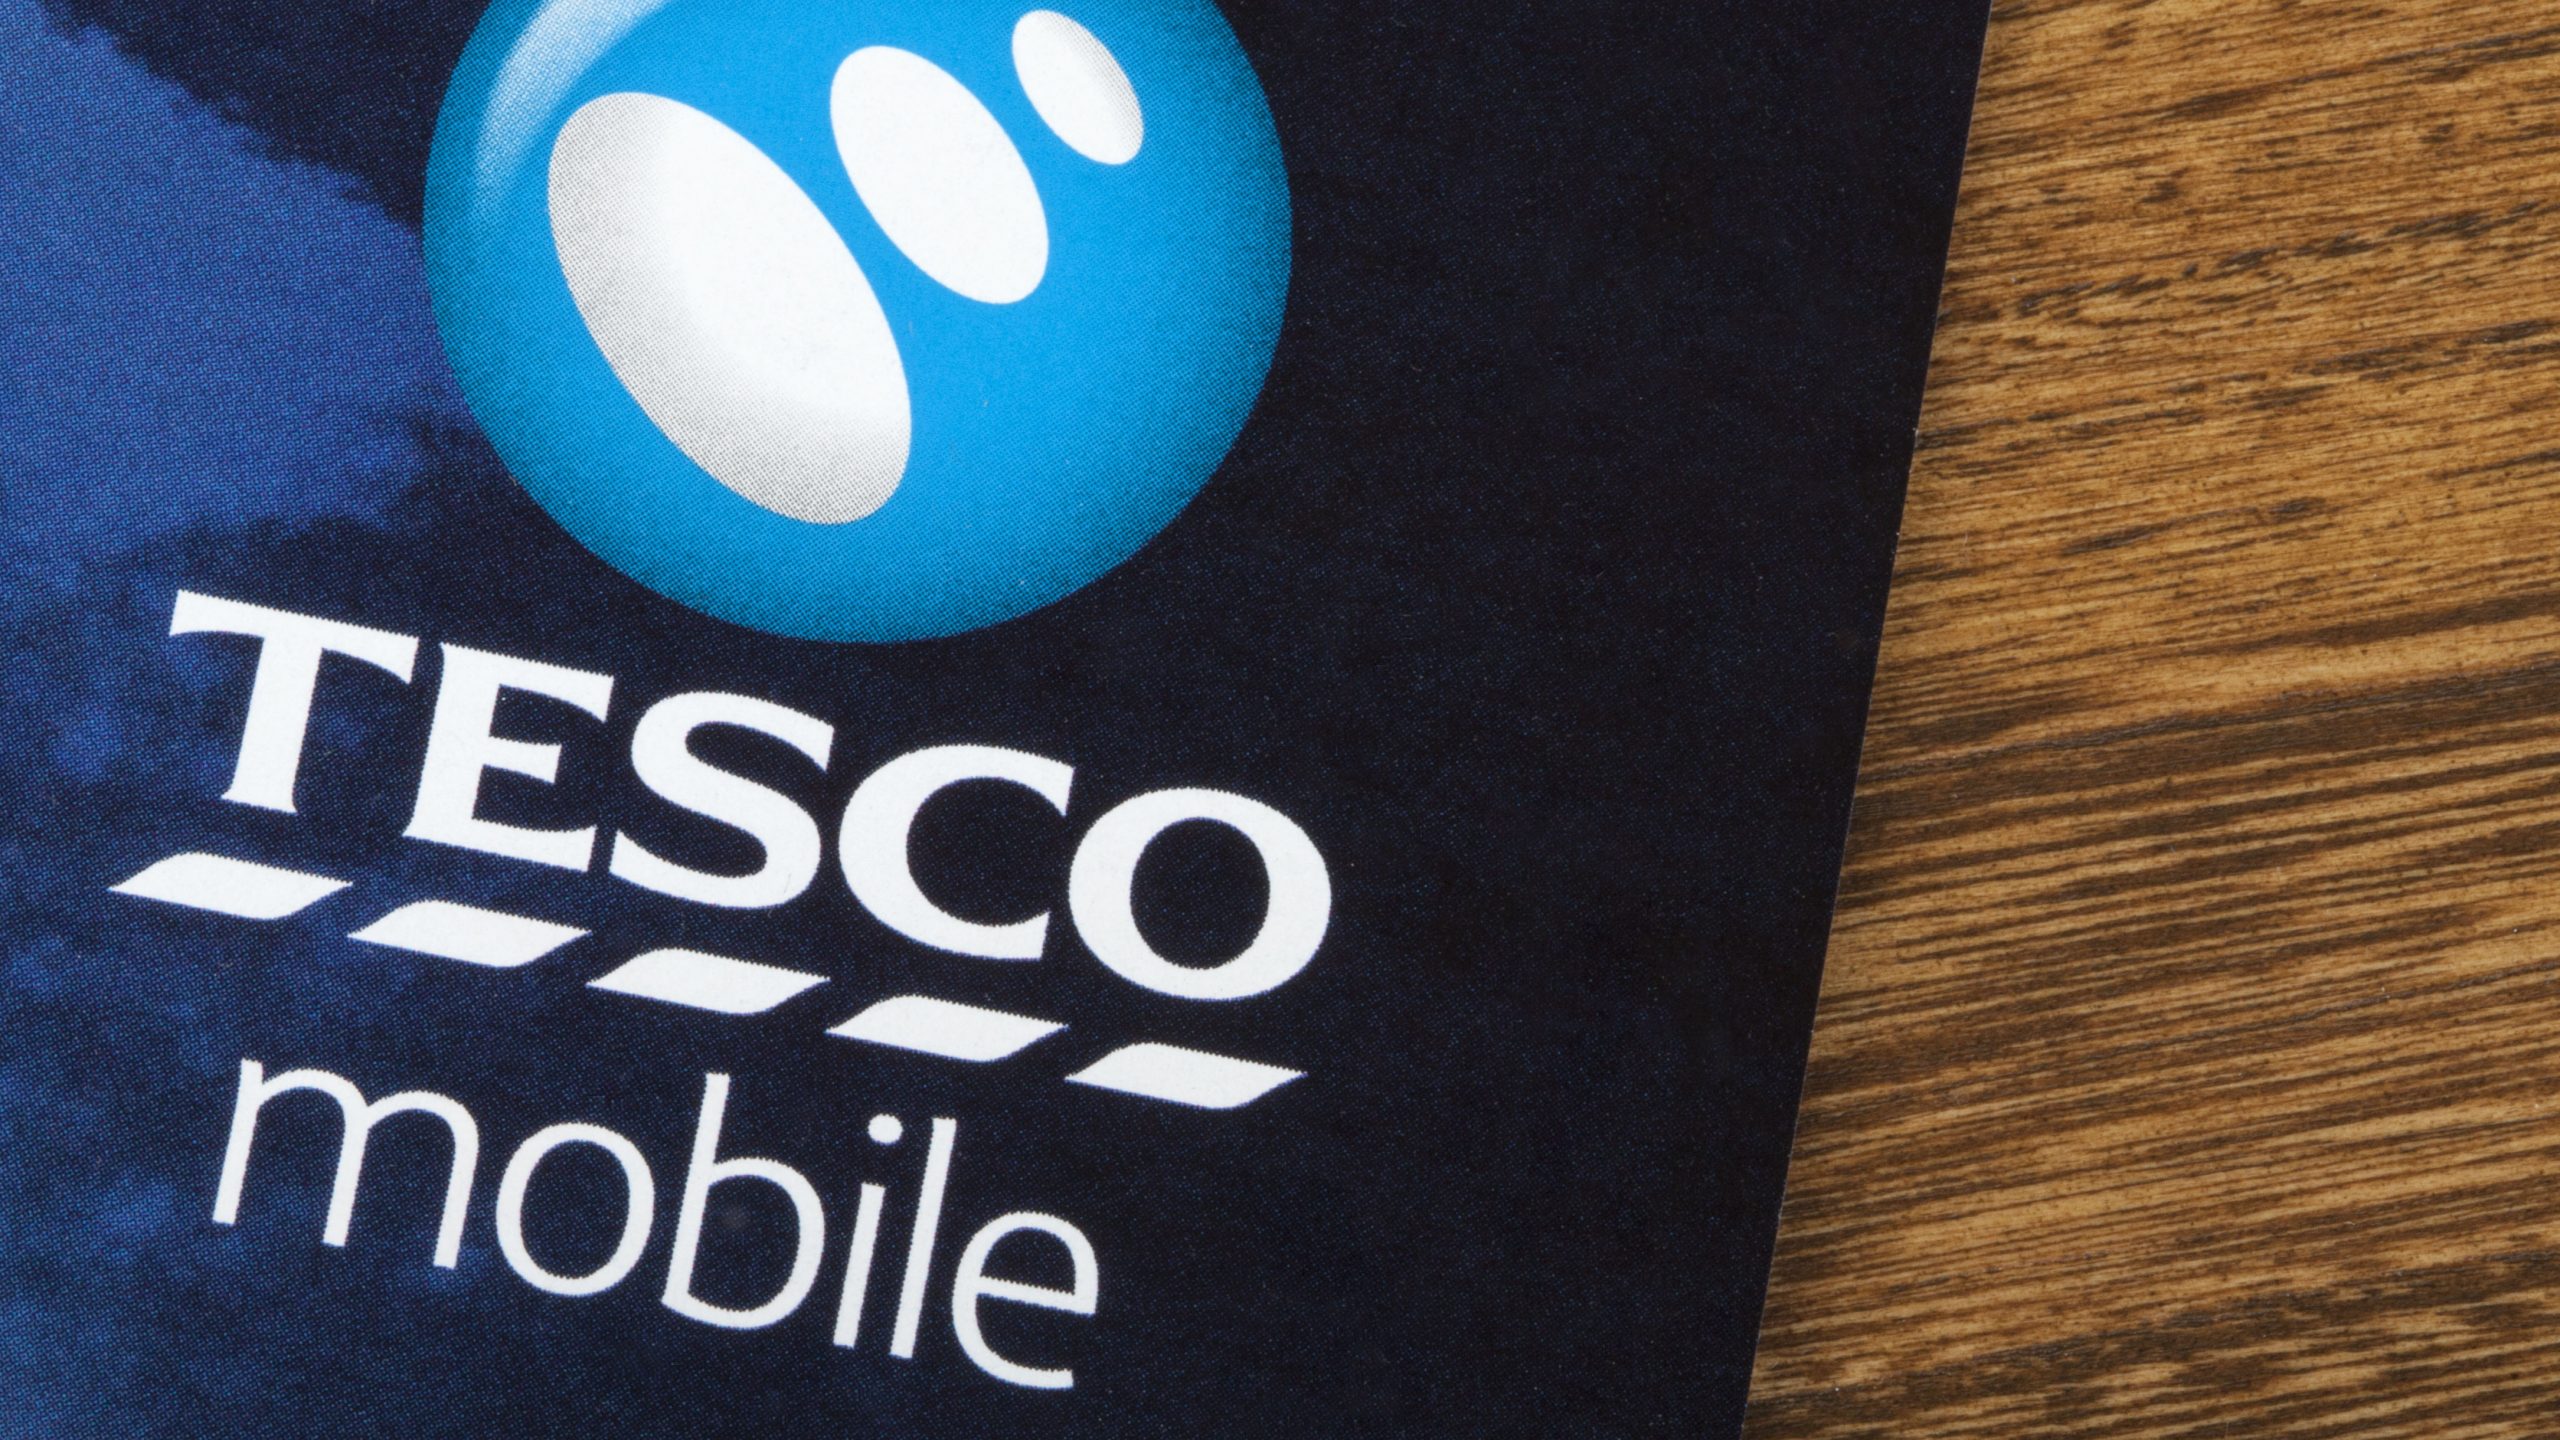 Tesco Mobile: paquetes de marca propia a precios competitivos